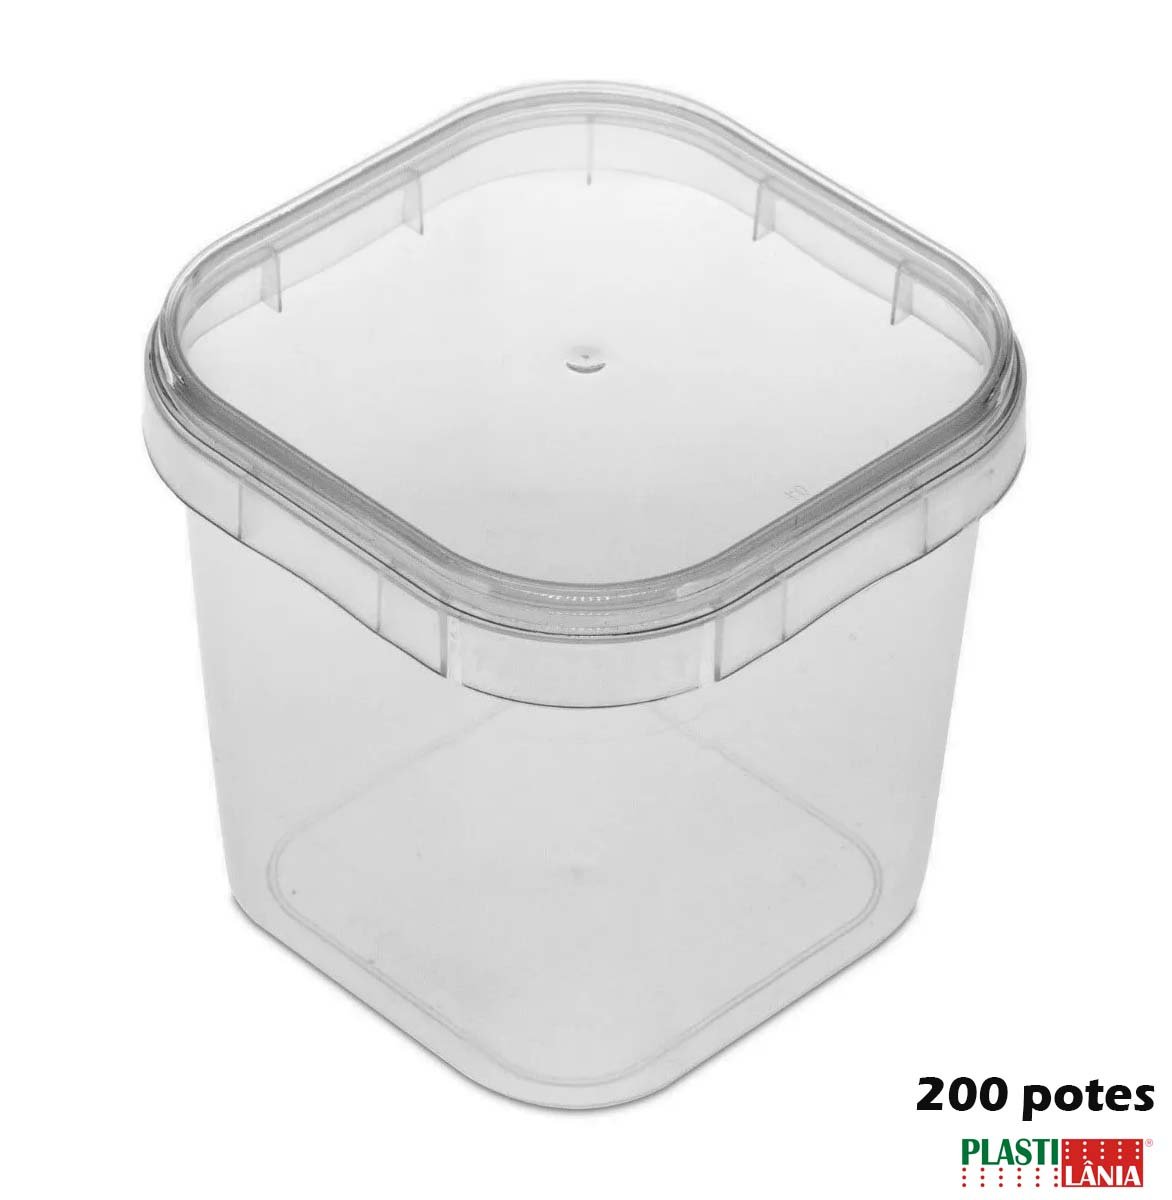 Potes Quadrados Bolo No Pote Plástico 220ml Lacre - 200 Potinhos Plast